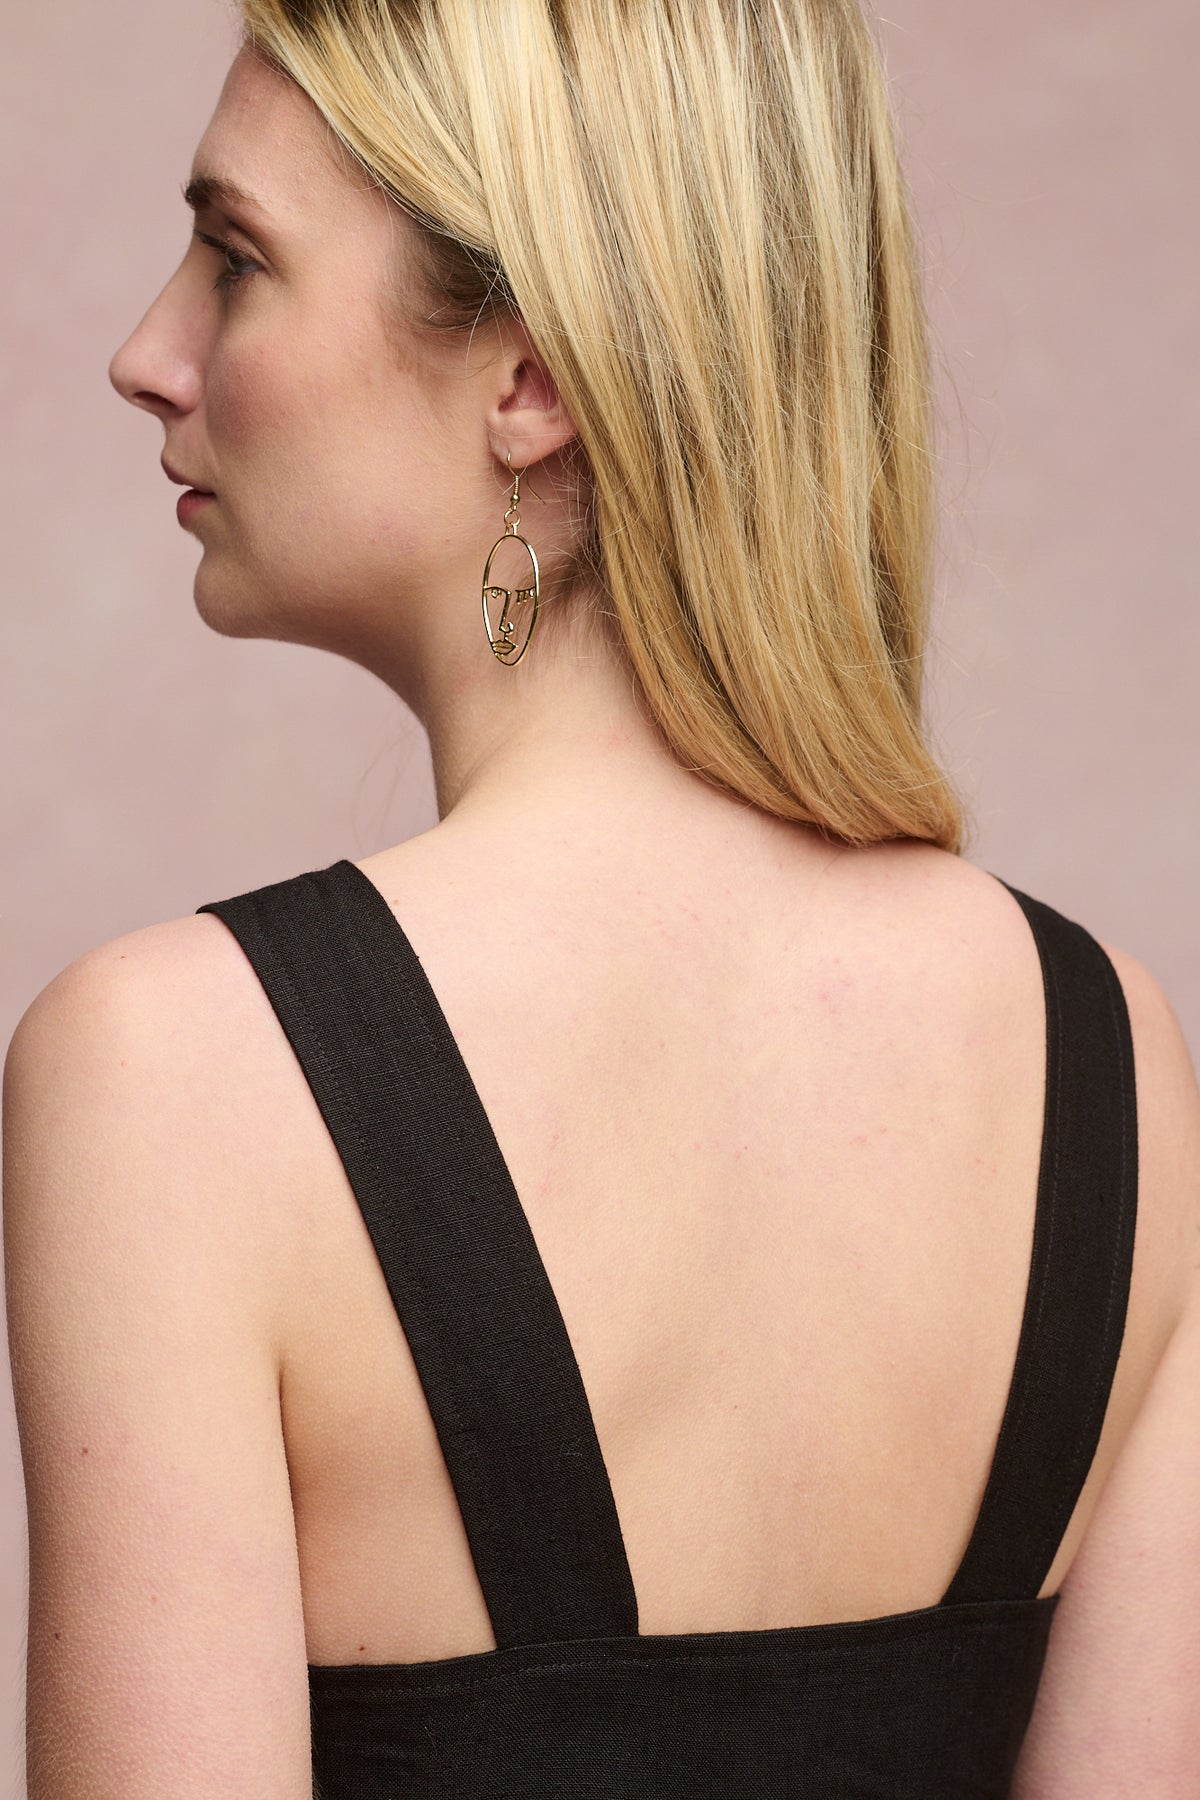 
            Back of shoulders of female wearing sun dress in black